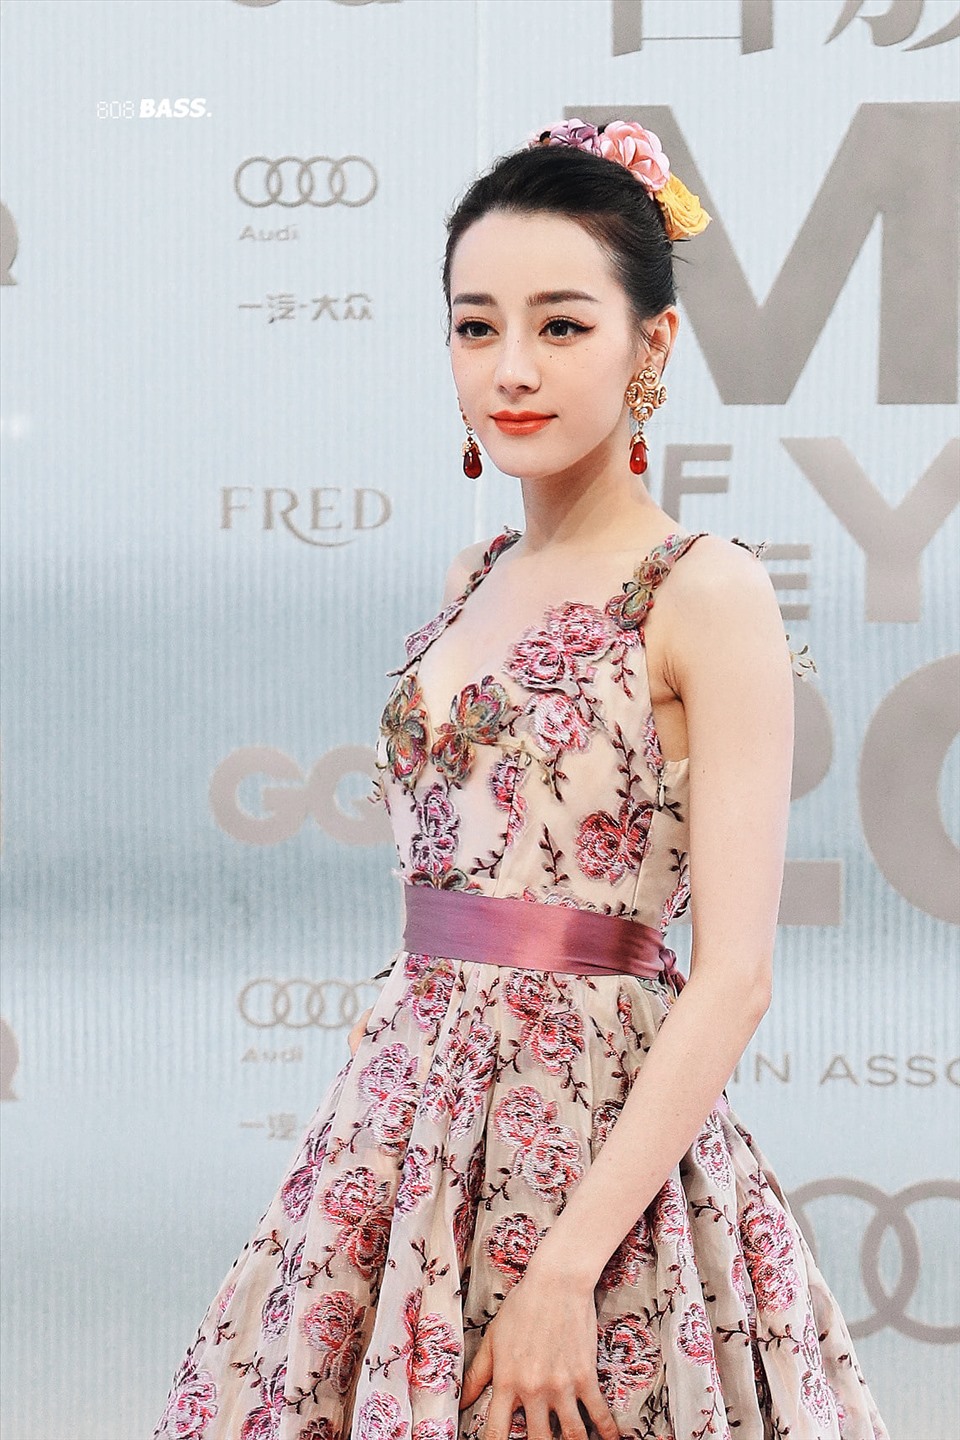 Xinh đẹp, rạng rỡ và tràn đầy sức sống trong trang phục thảm đỏ. Ảnh: Weibo